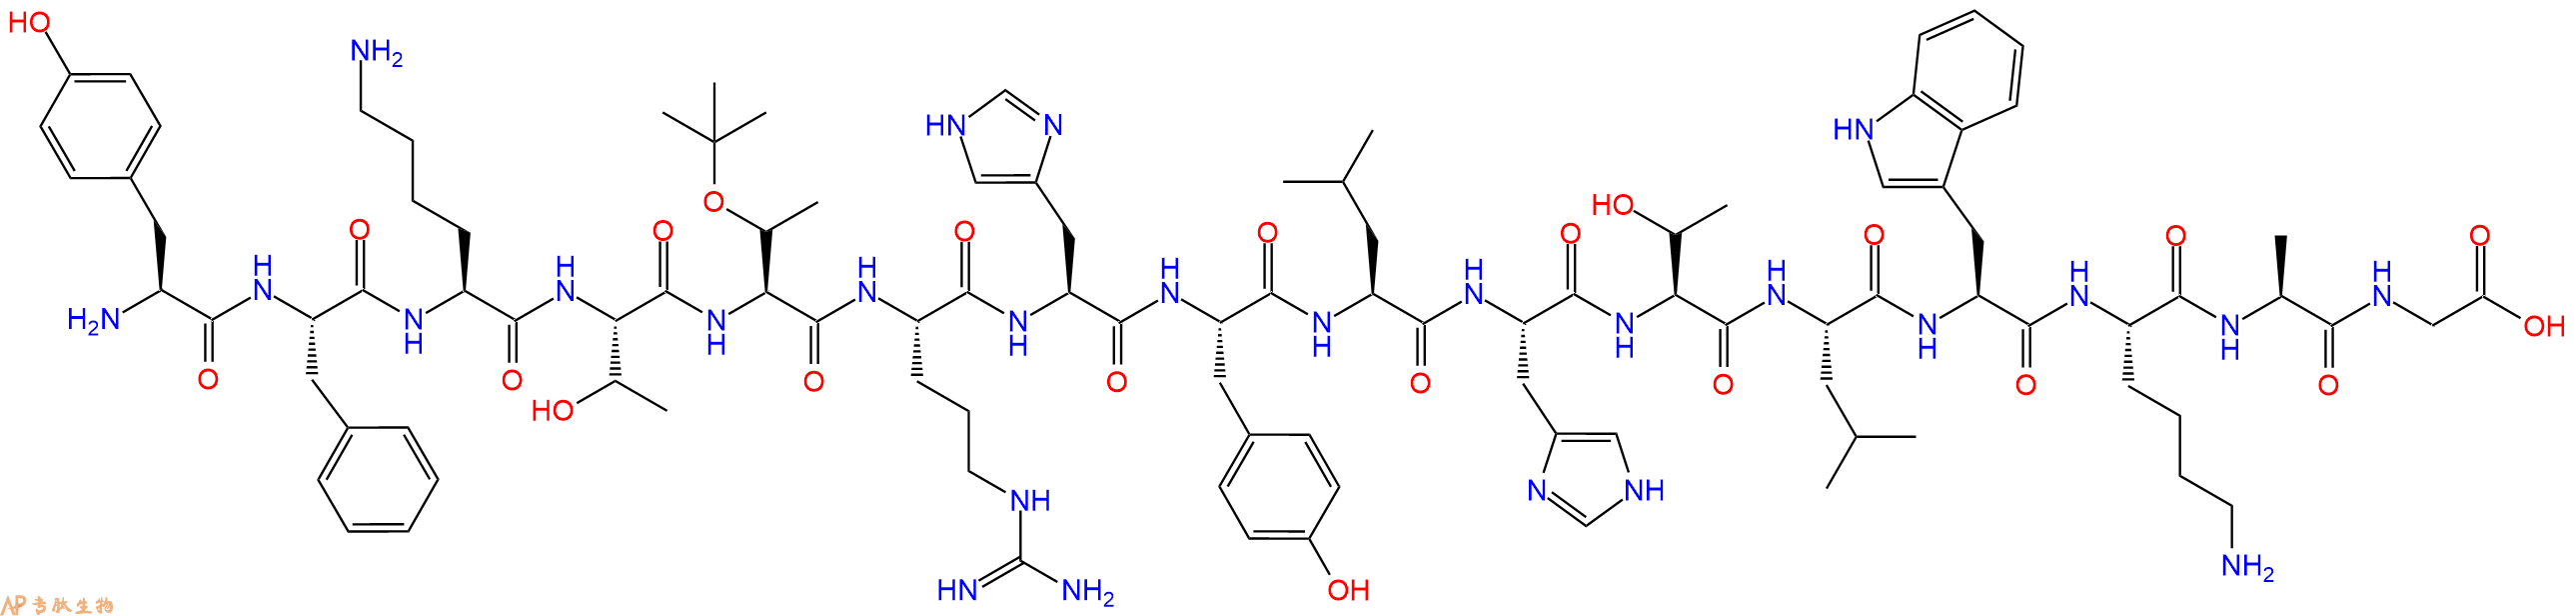 专肽生物产品H2N-Tyr-Phe-Lys-Thr-Thr(tBu)-Arg-His-Tyr-Leu-His-T